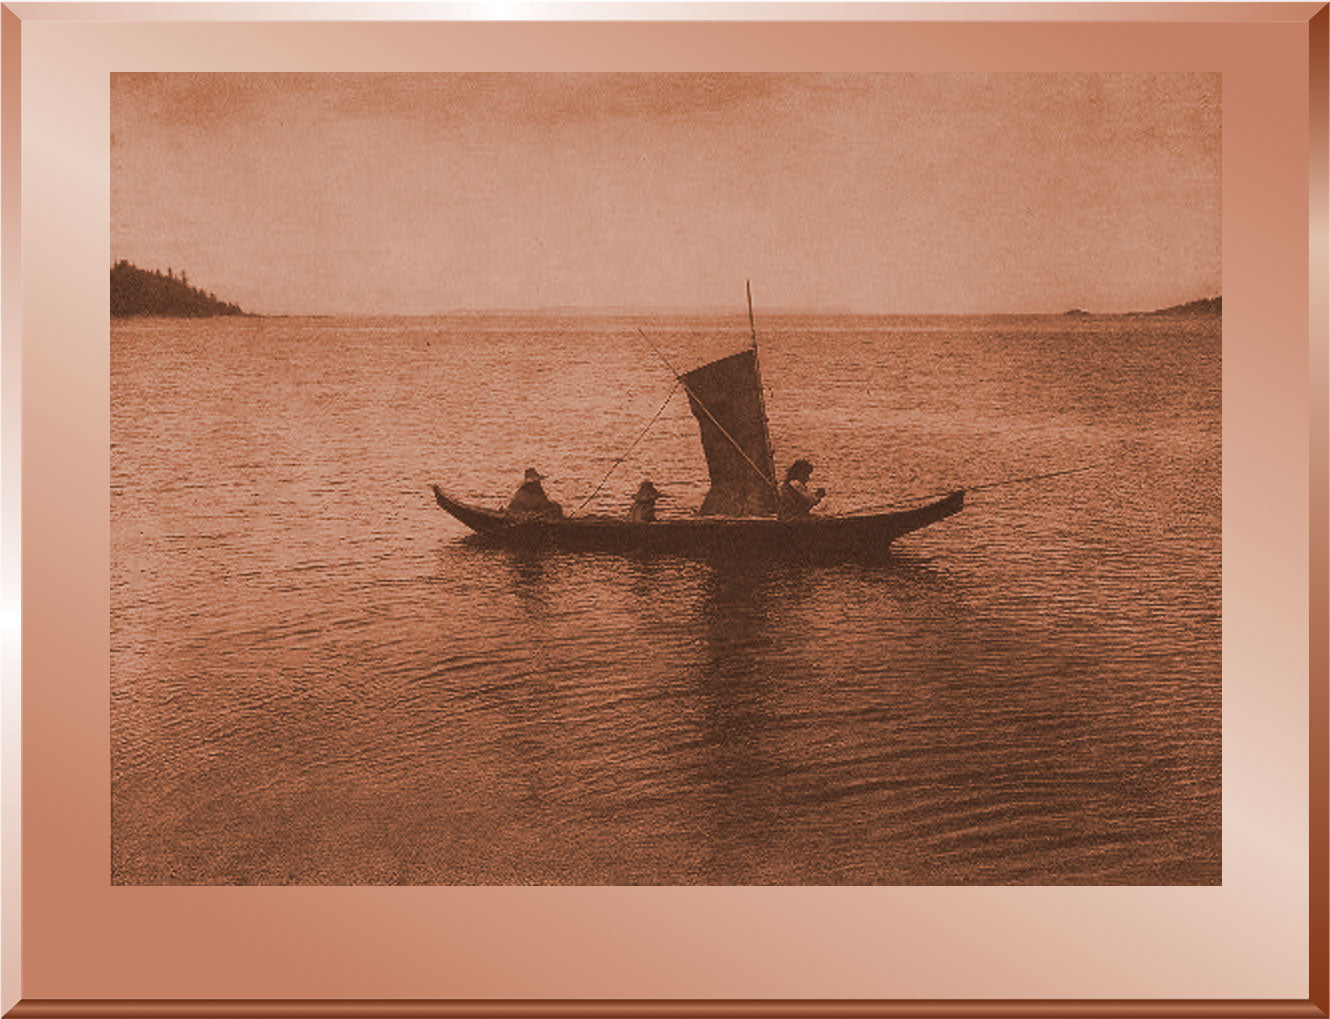 A Kwakiutl Canoe